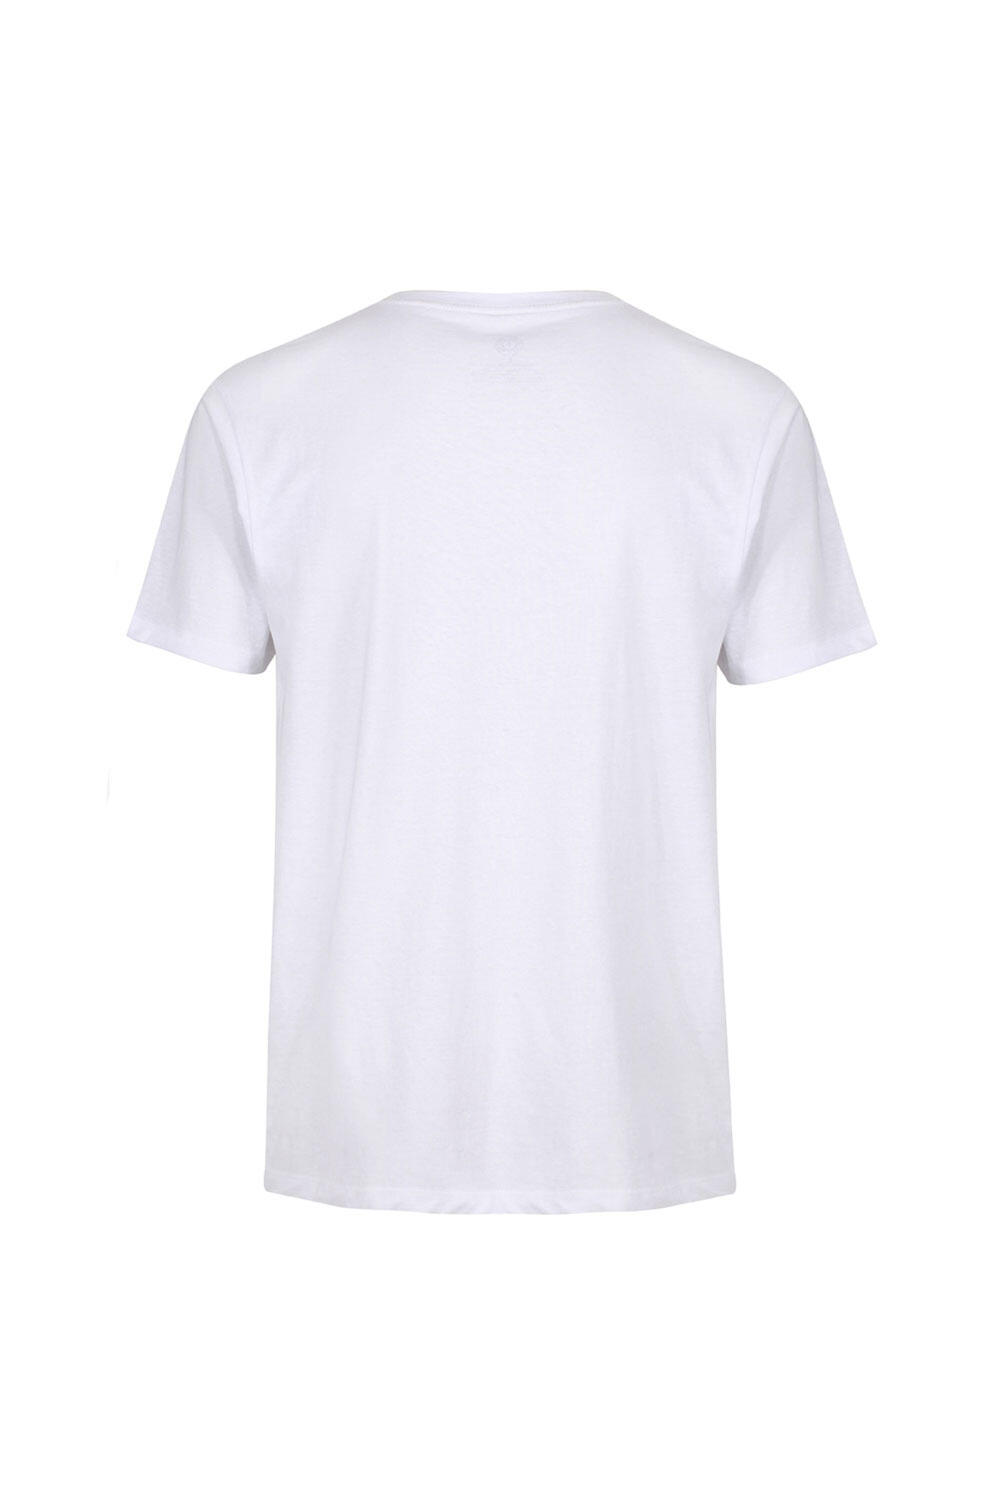 Men's Gold's Gym Left Chest Logo T-Shirt 3/4